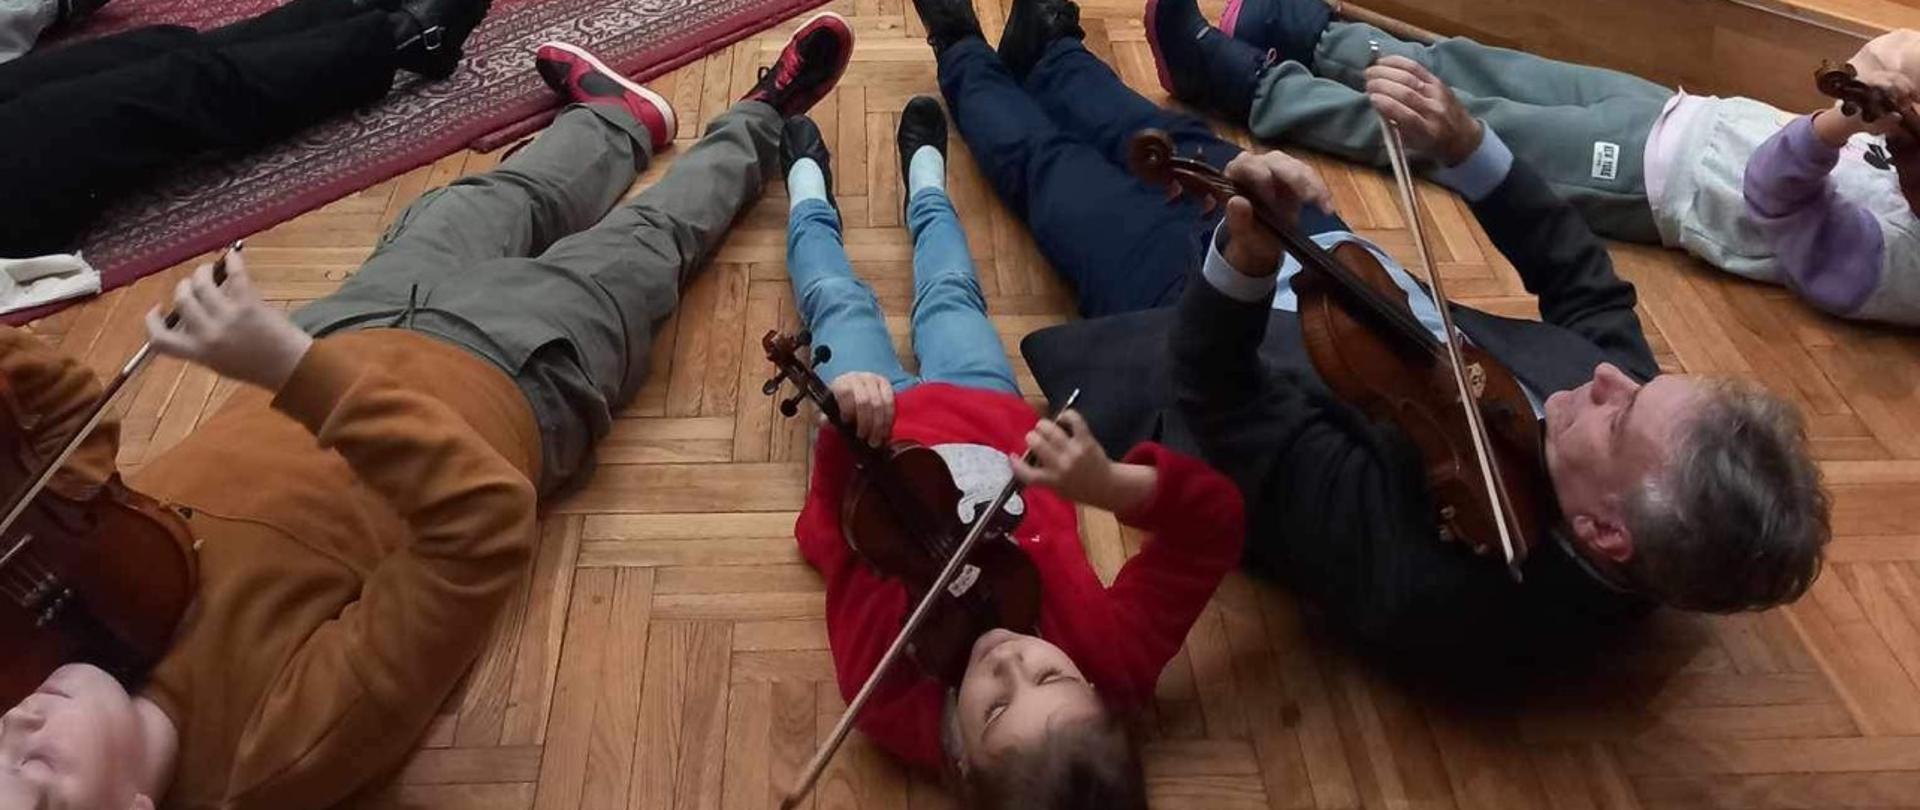 Uczestnicy warsztatów skrzypcowych wraz z prowadzącym podczas ćwiczenia w pozycji leżącej ze skrzypcami na parkiecie sali królewskiej PSM Mielec